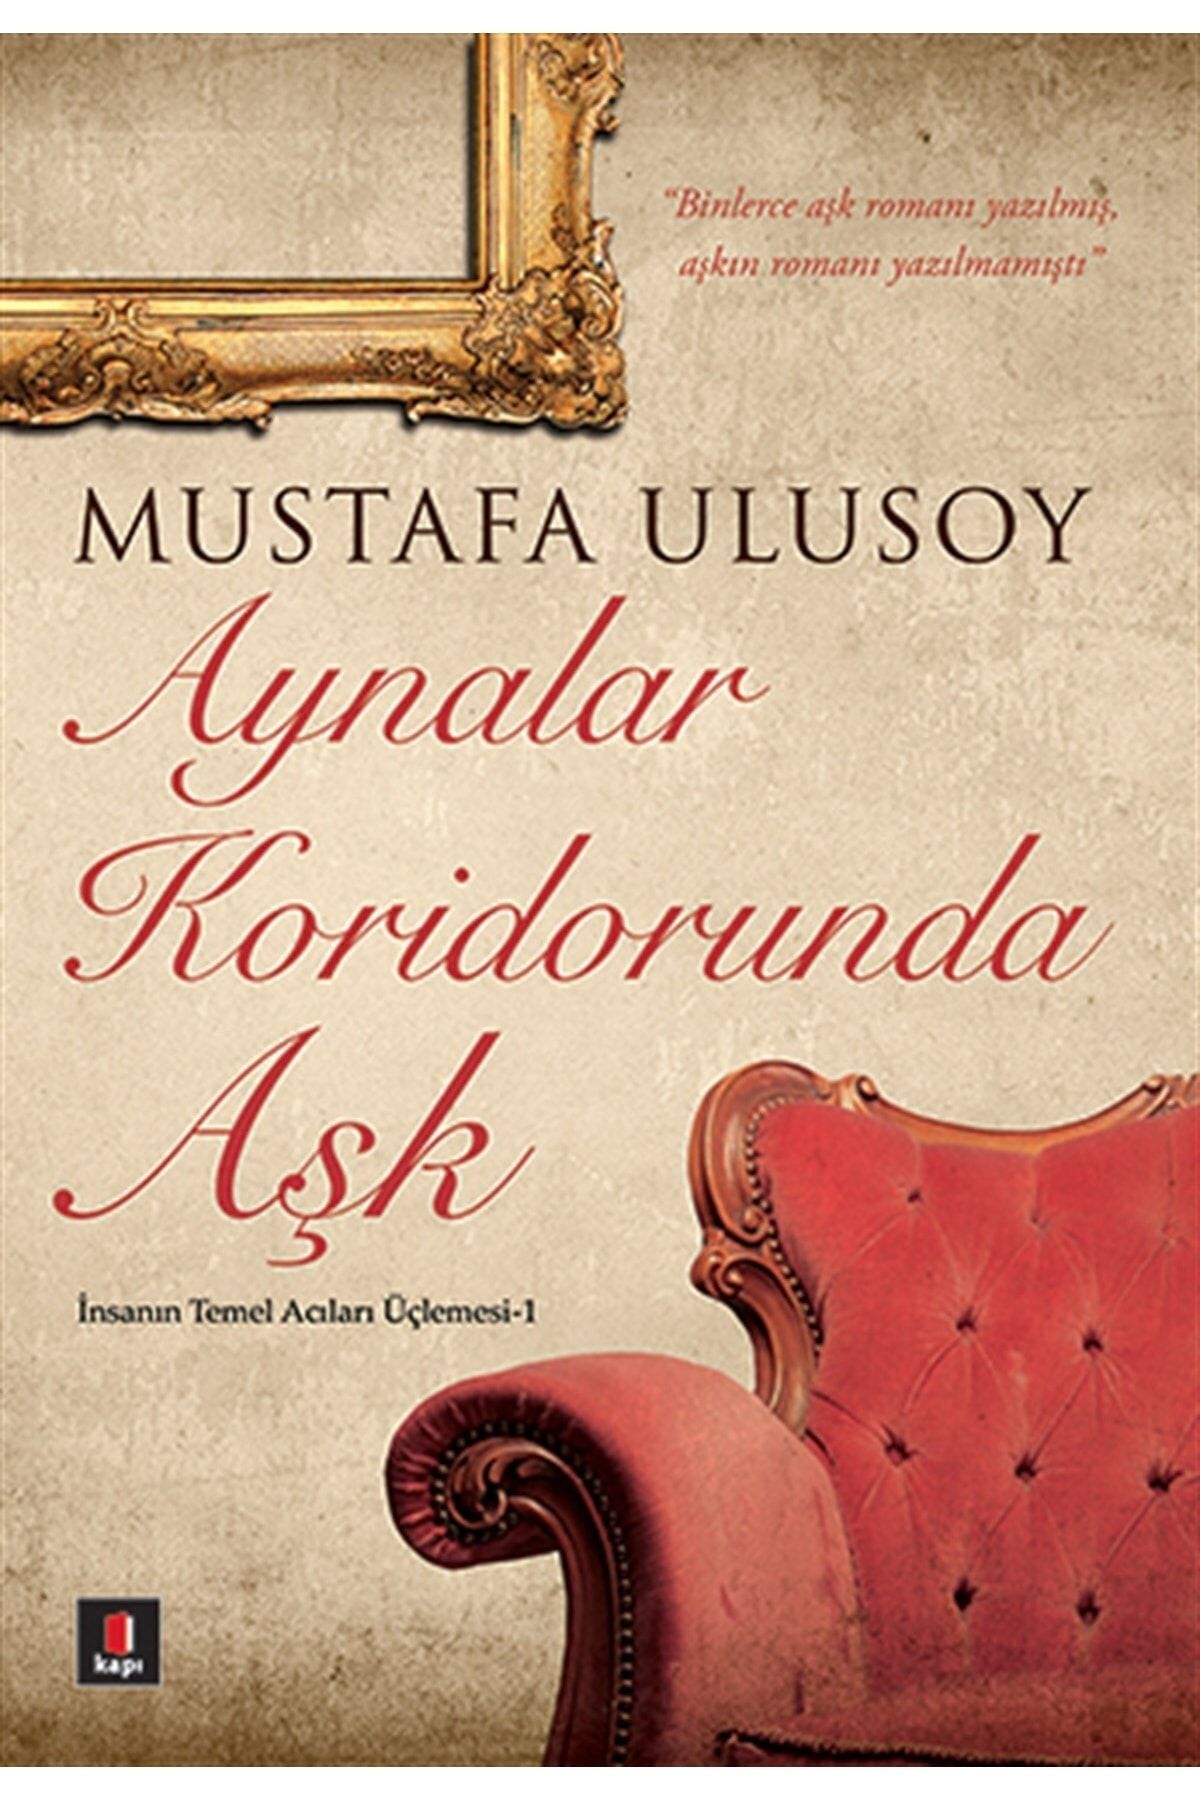 Kapı Yayınları Aynalar Koridorunda Aşk | Mustafa Ulusoy |